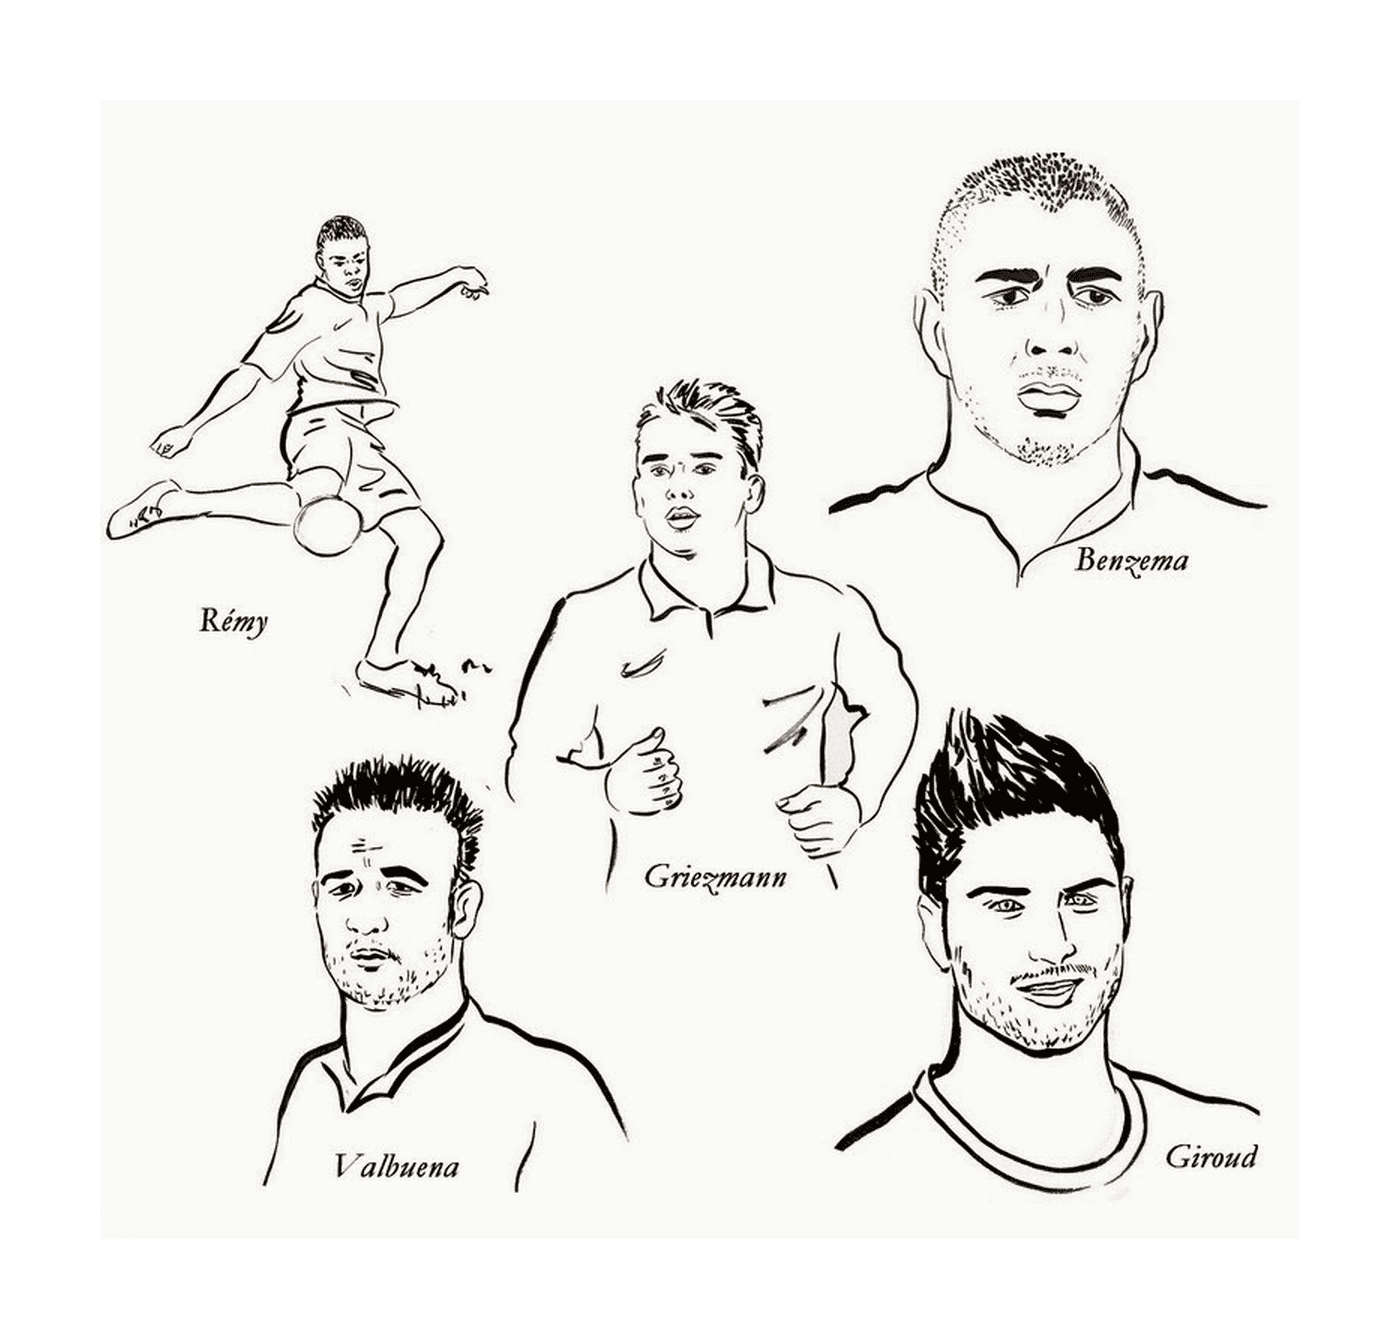  Karim Benzema, Griezmann y otros jugadores de fútbol 